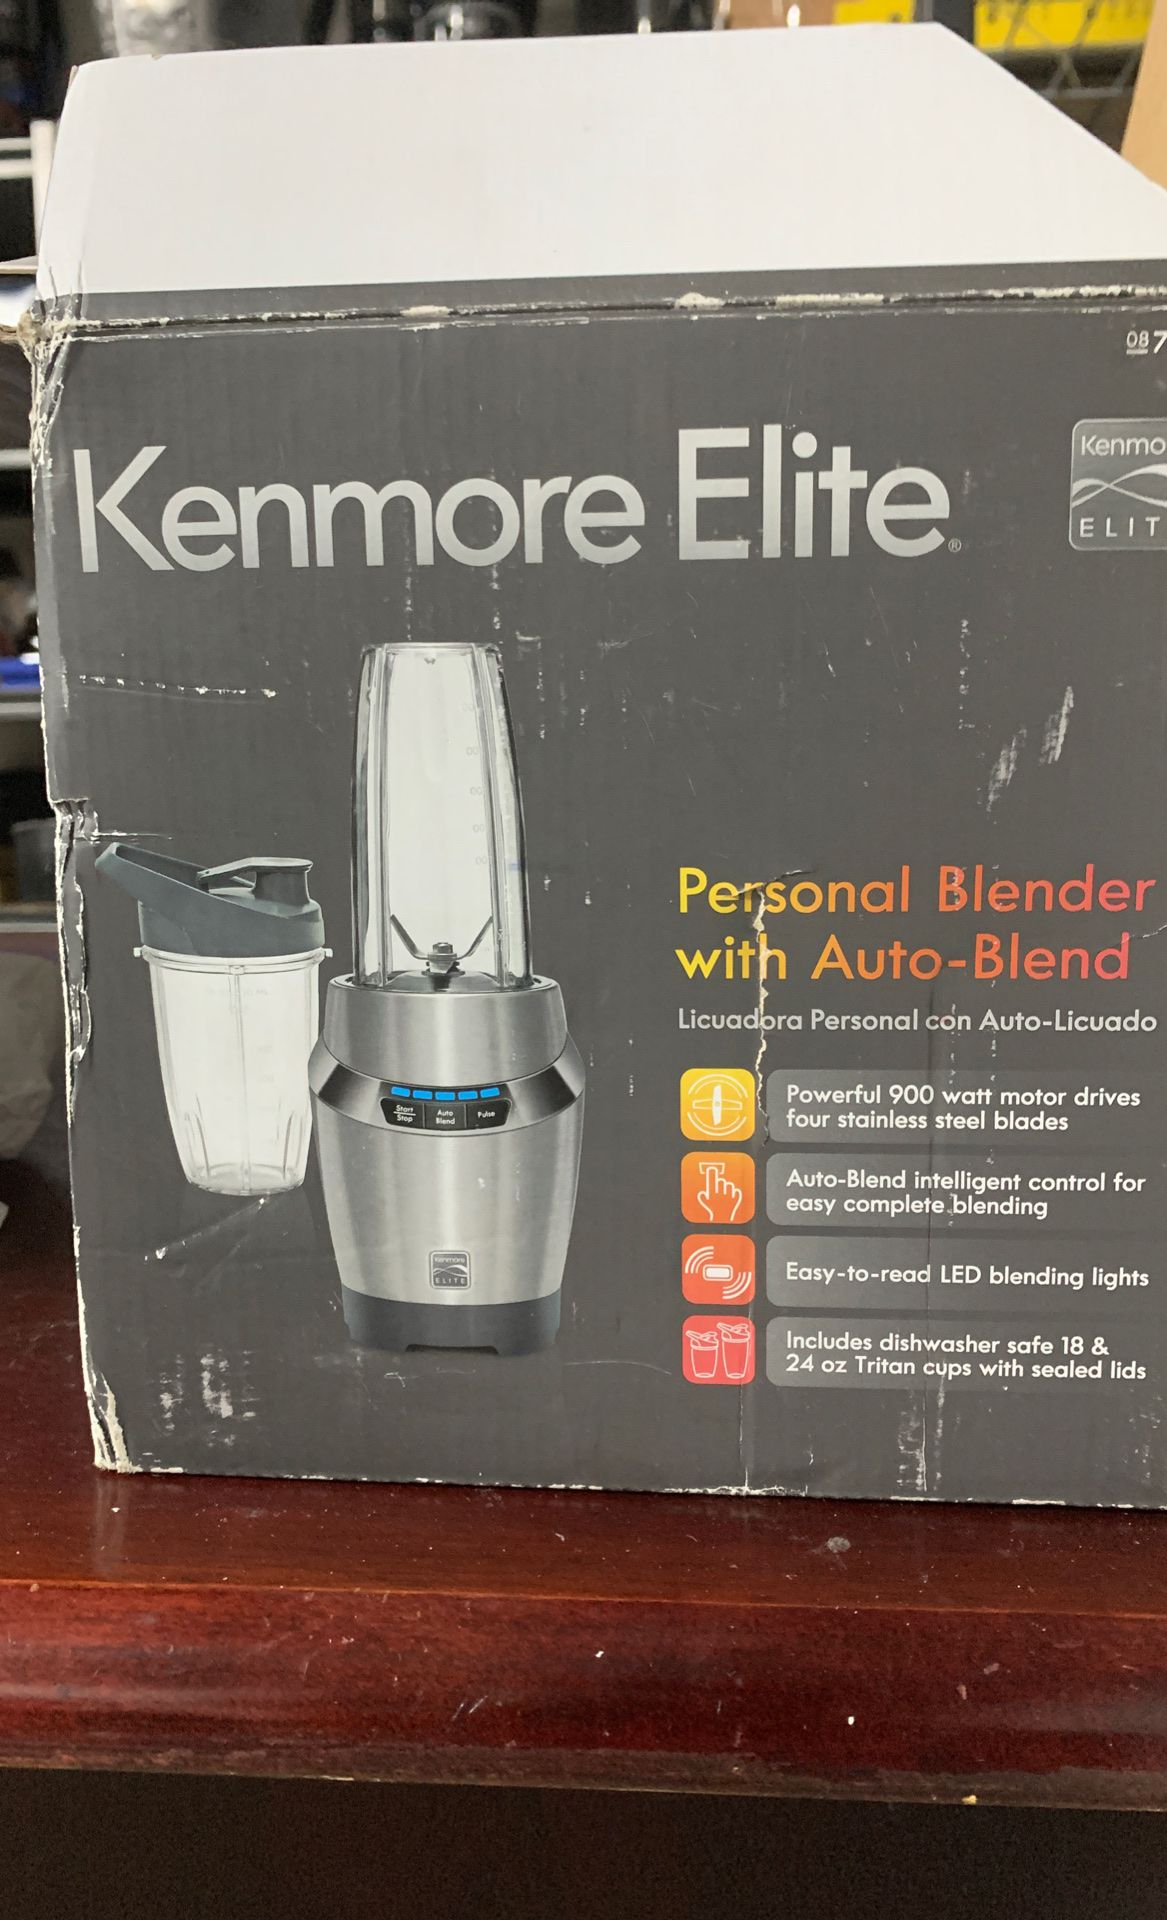 Kenmore elite personal blender